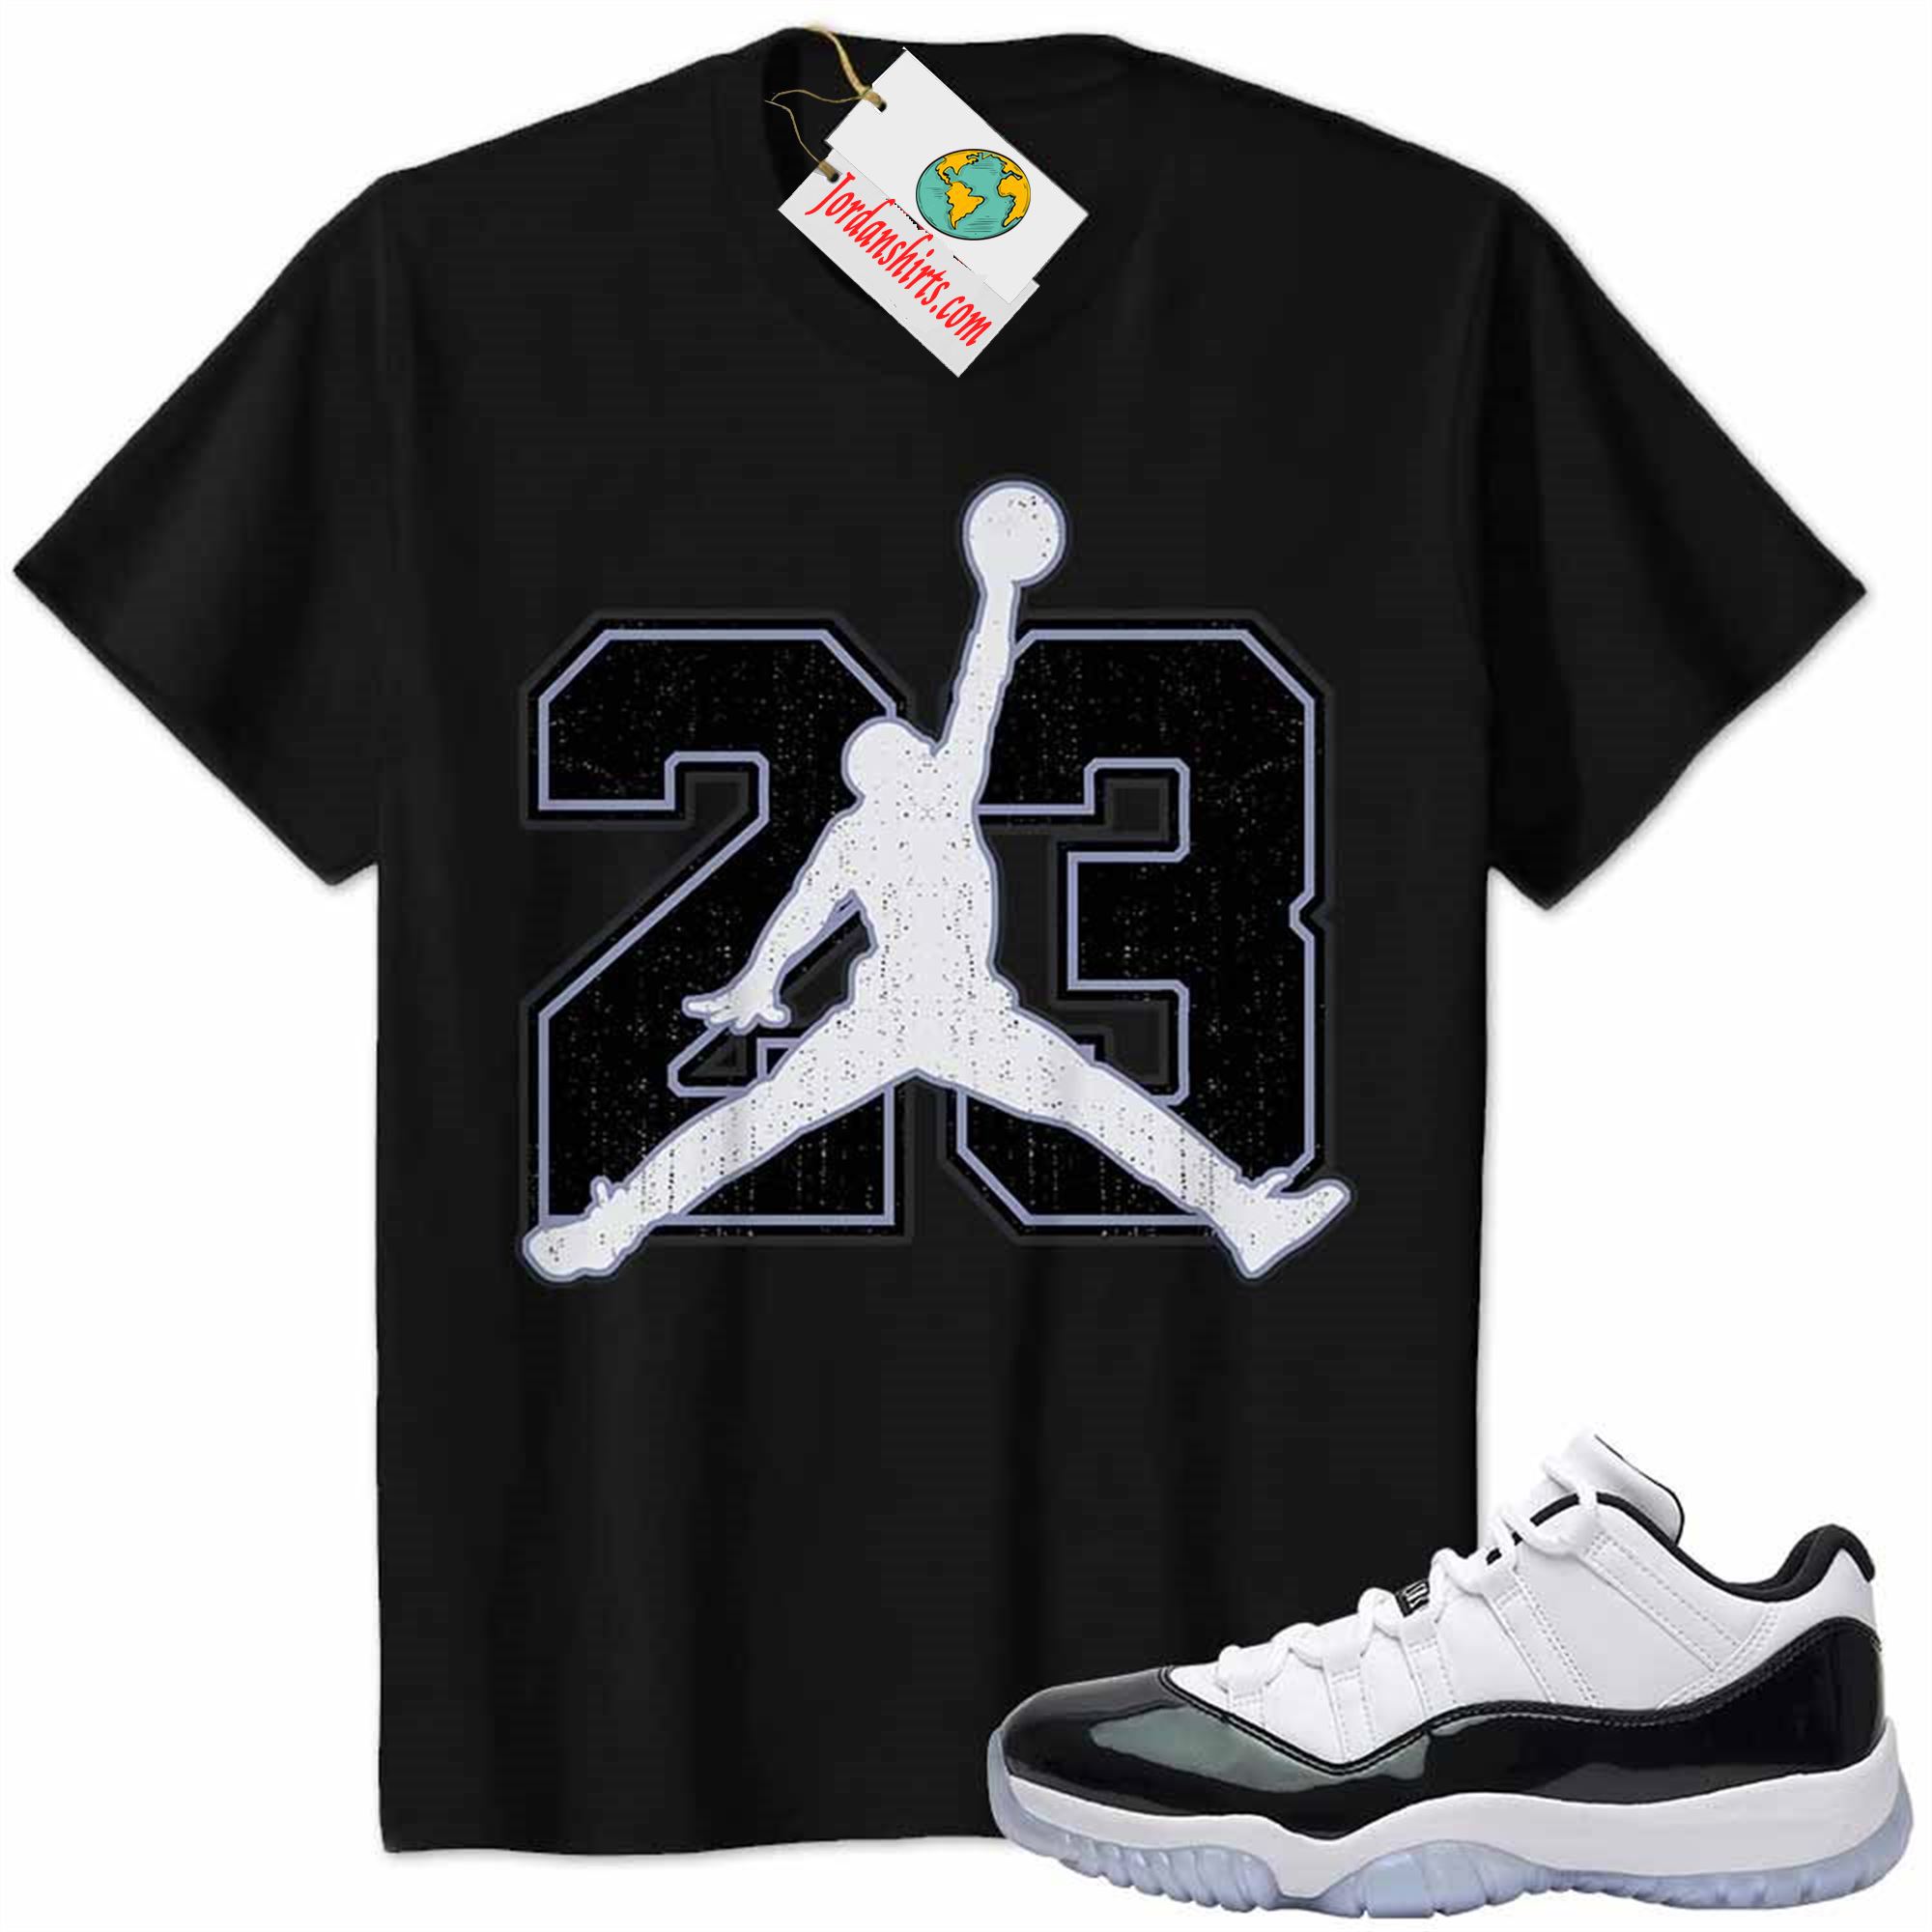 Jordan 11 Shirt, Jordan 11 Emerald Shirt Jumpman No23 Black Plus Size Up To 5xl